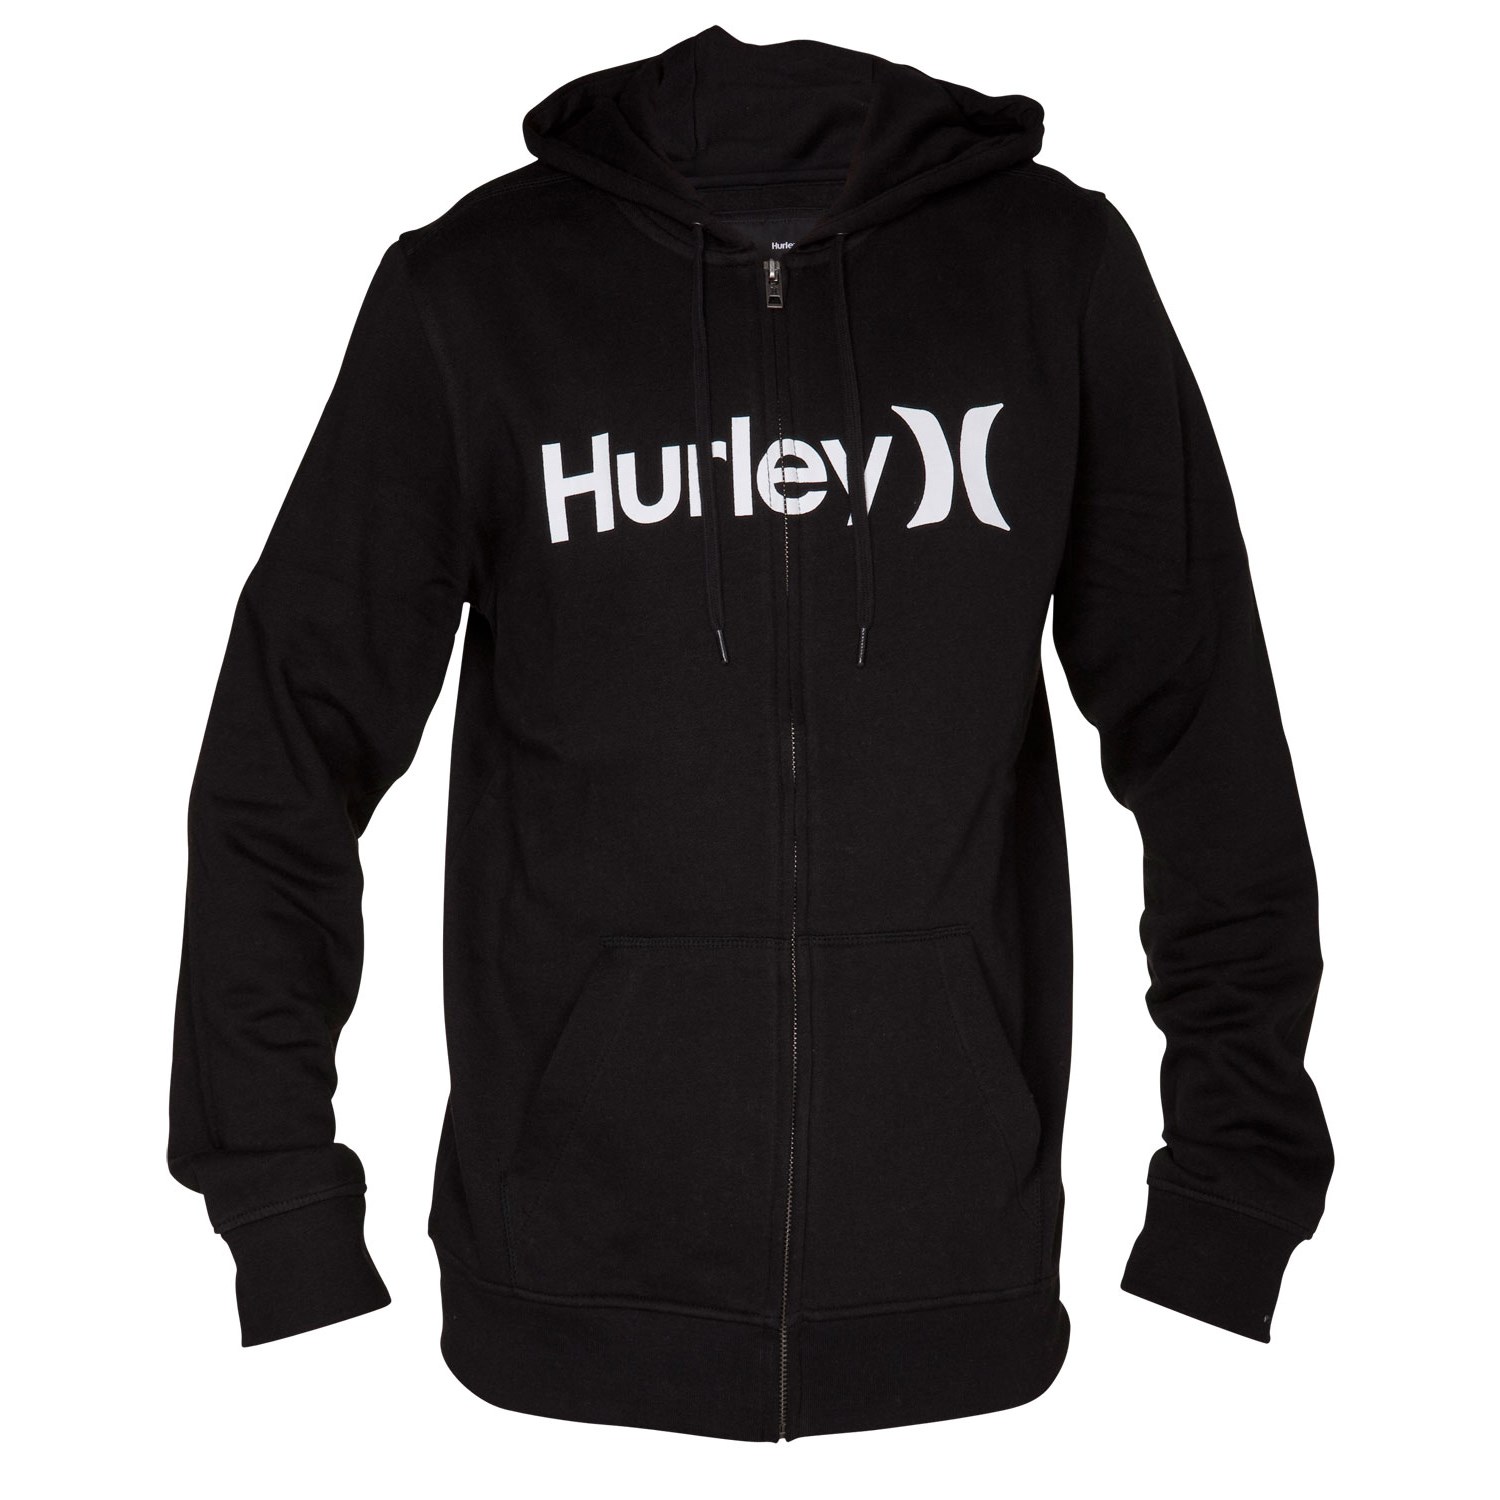 Hurley Hoodies @BBT.com